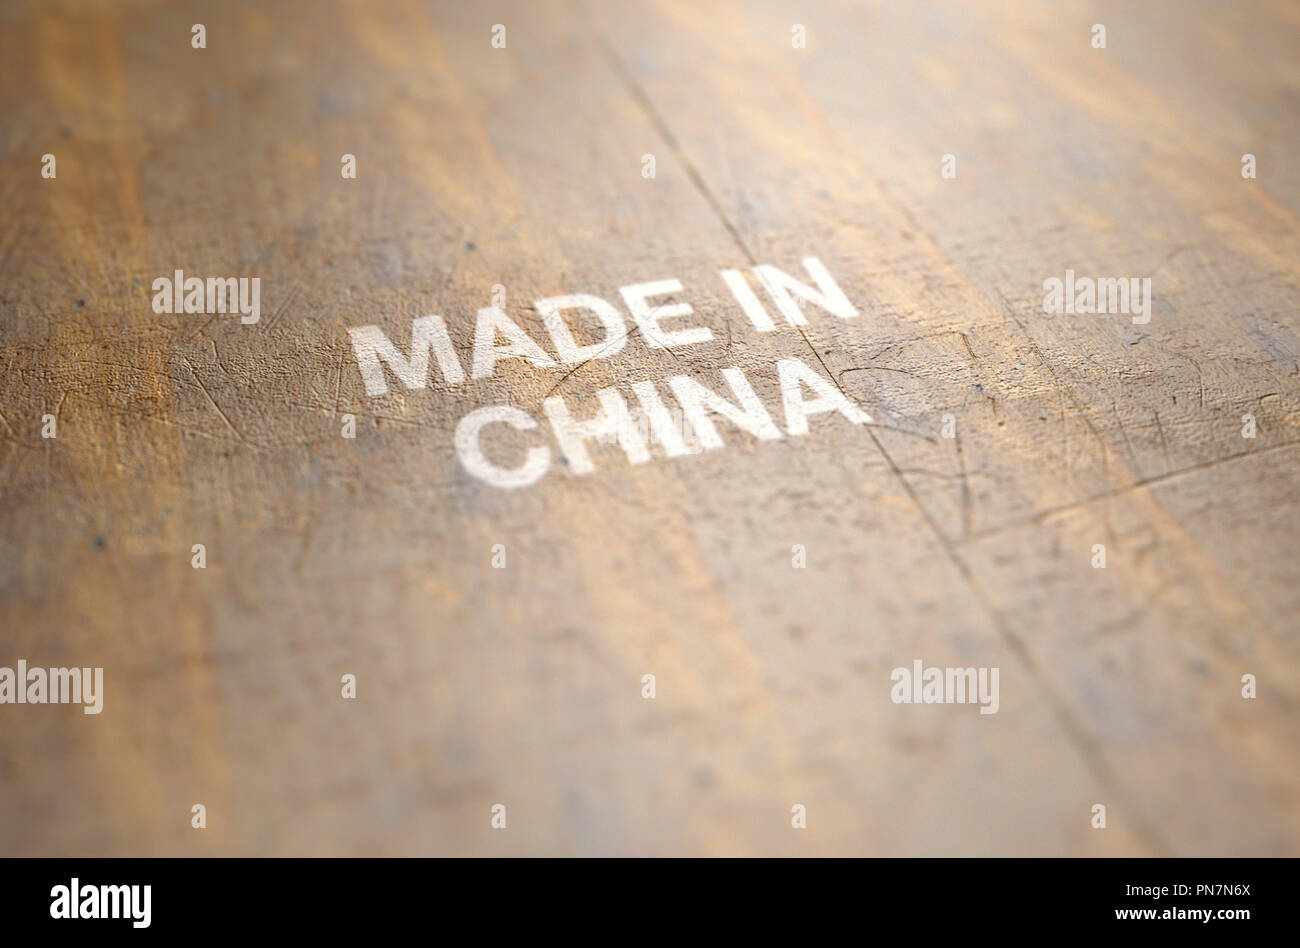 Eine extreme Nahaufnahme von einem abgenutzten drucken Zeichen, dass in China auf eine flache hölzerne Produkt Oberfläche liest - 3D-Rendering Stockfoto